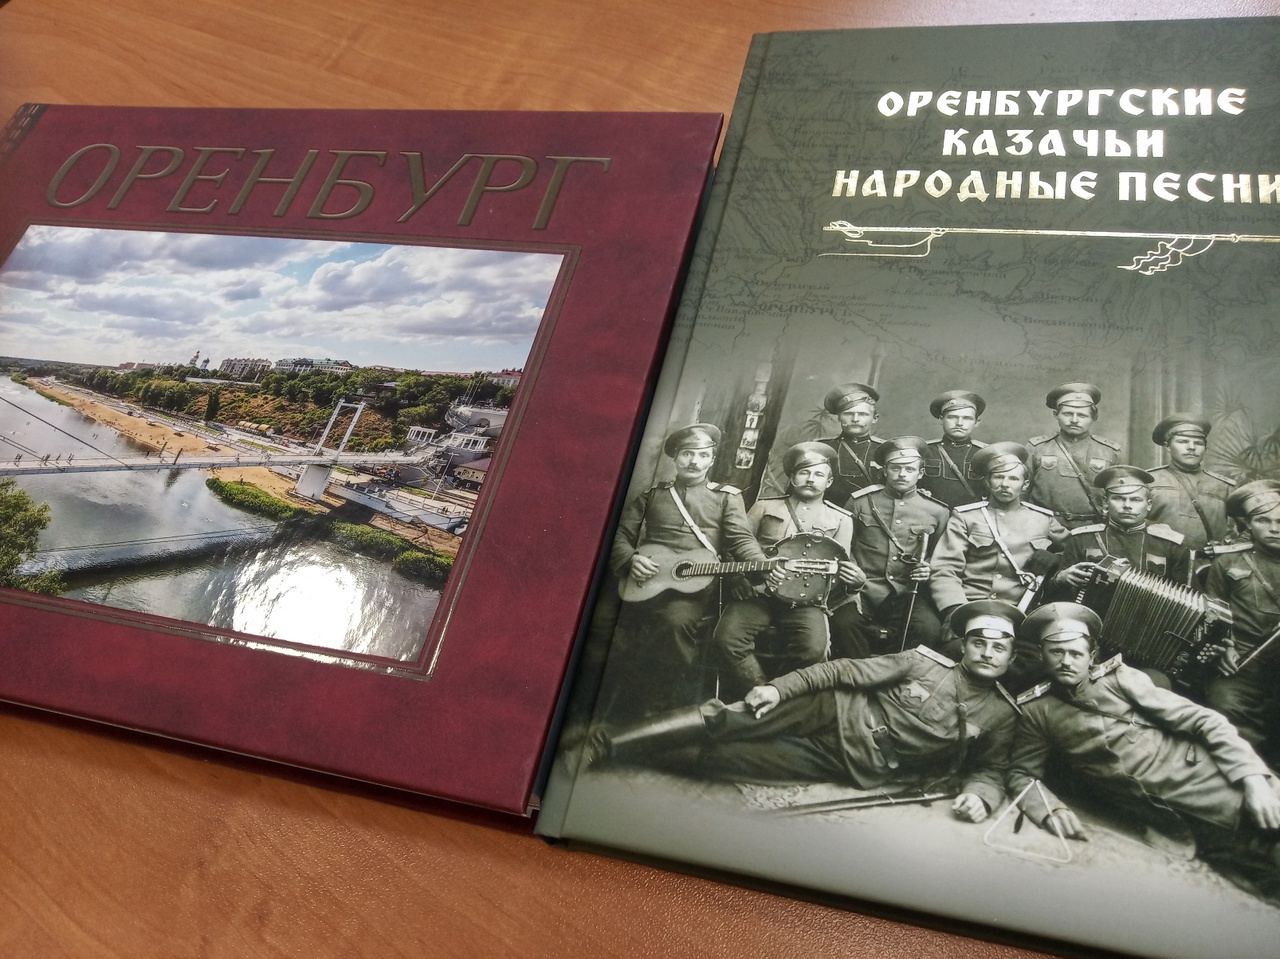 В Оренбургском книжном издательстве подготовлен сборник «Оренбургские казачьи народные песни», который ждет своего официального представления